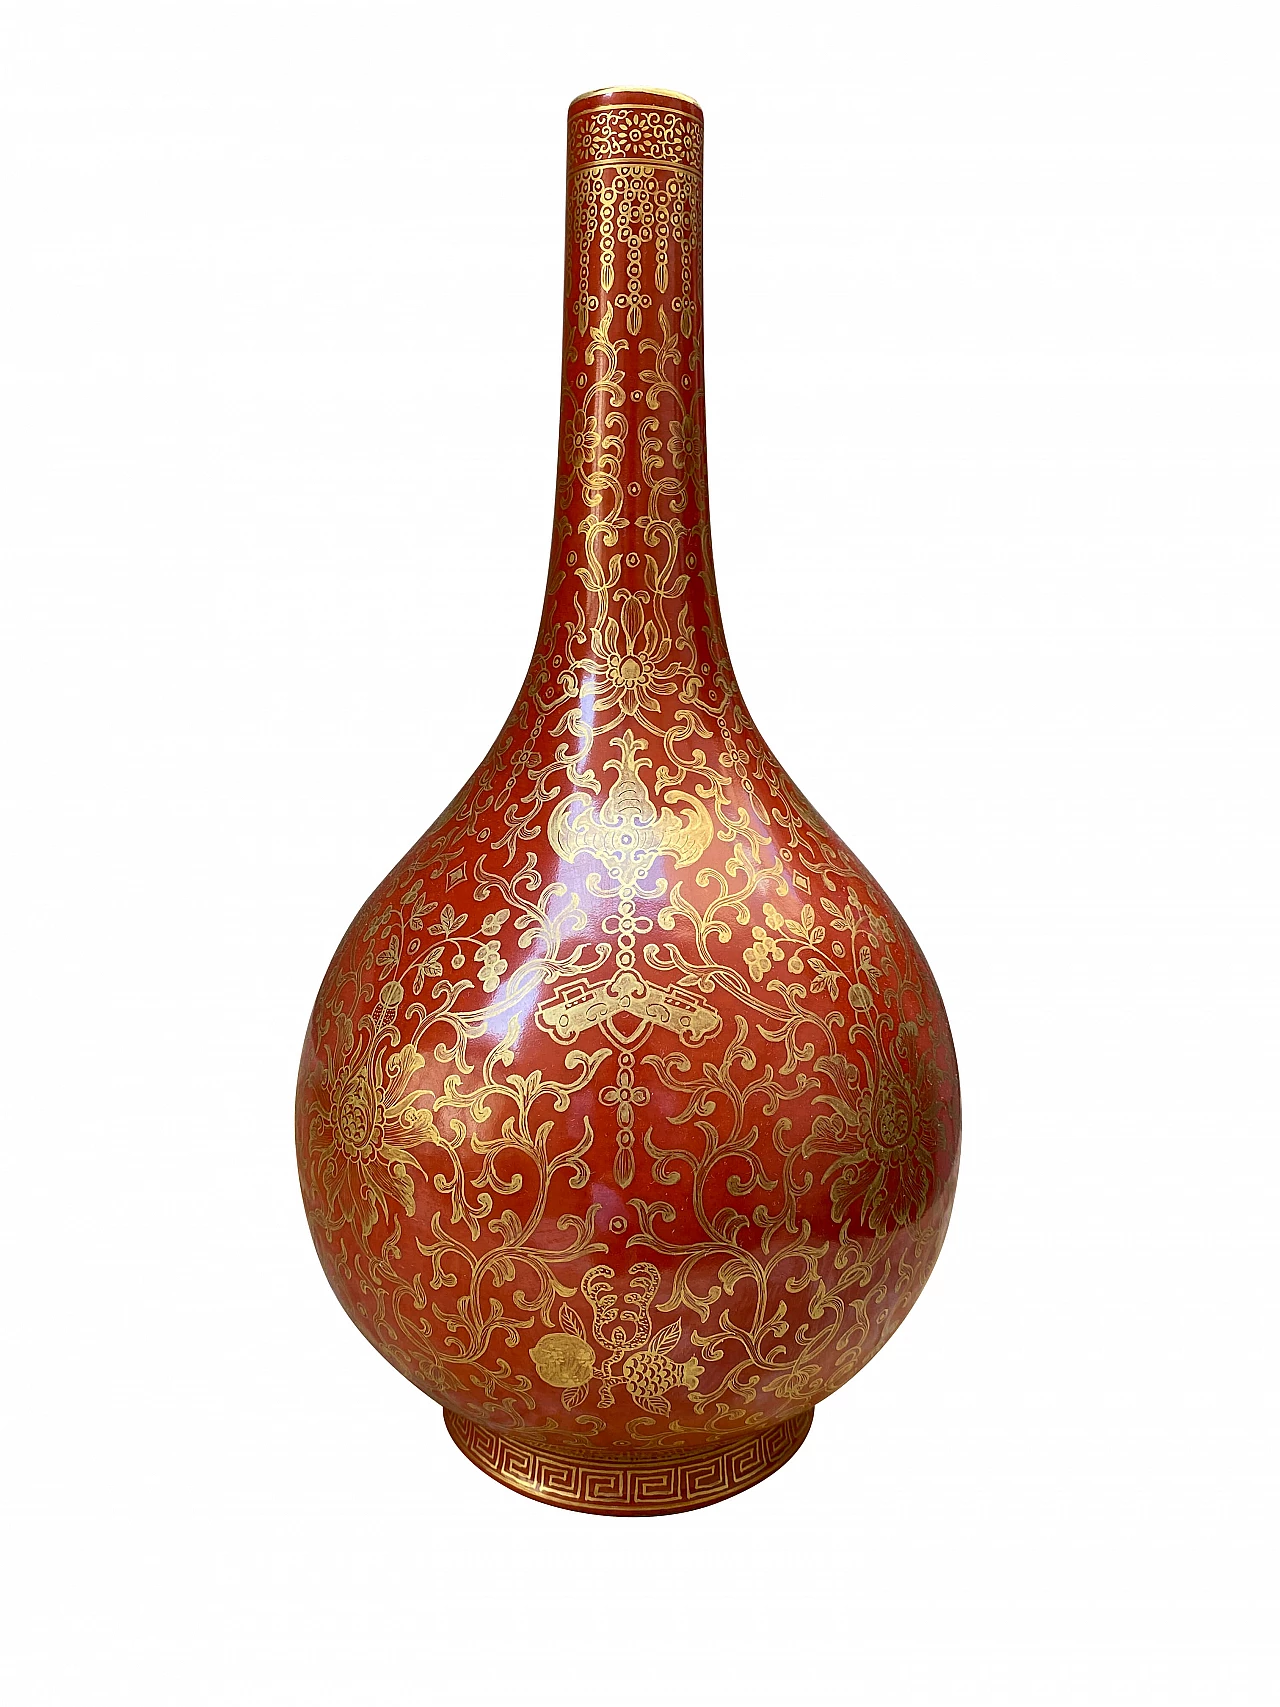 Chinese ceramic vase, 19th century 1255876